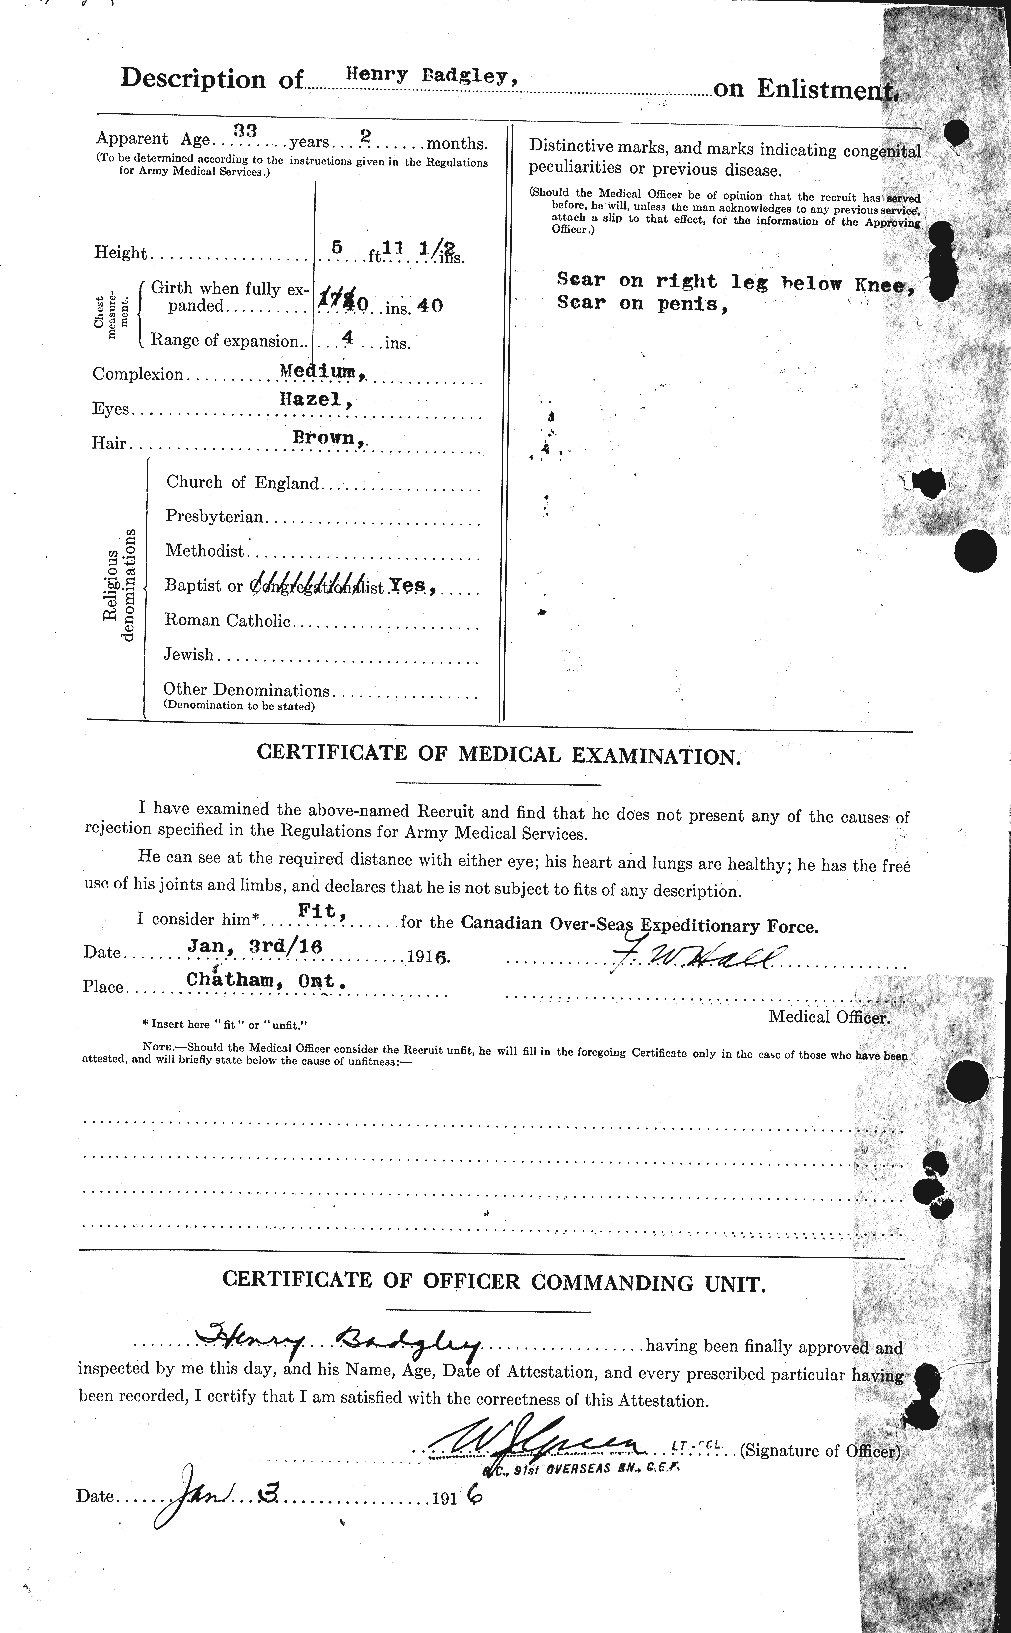 Dossiers du Personnel de la Première Guerre mondiale - CEC 217726b